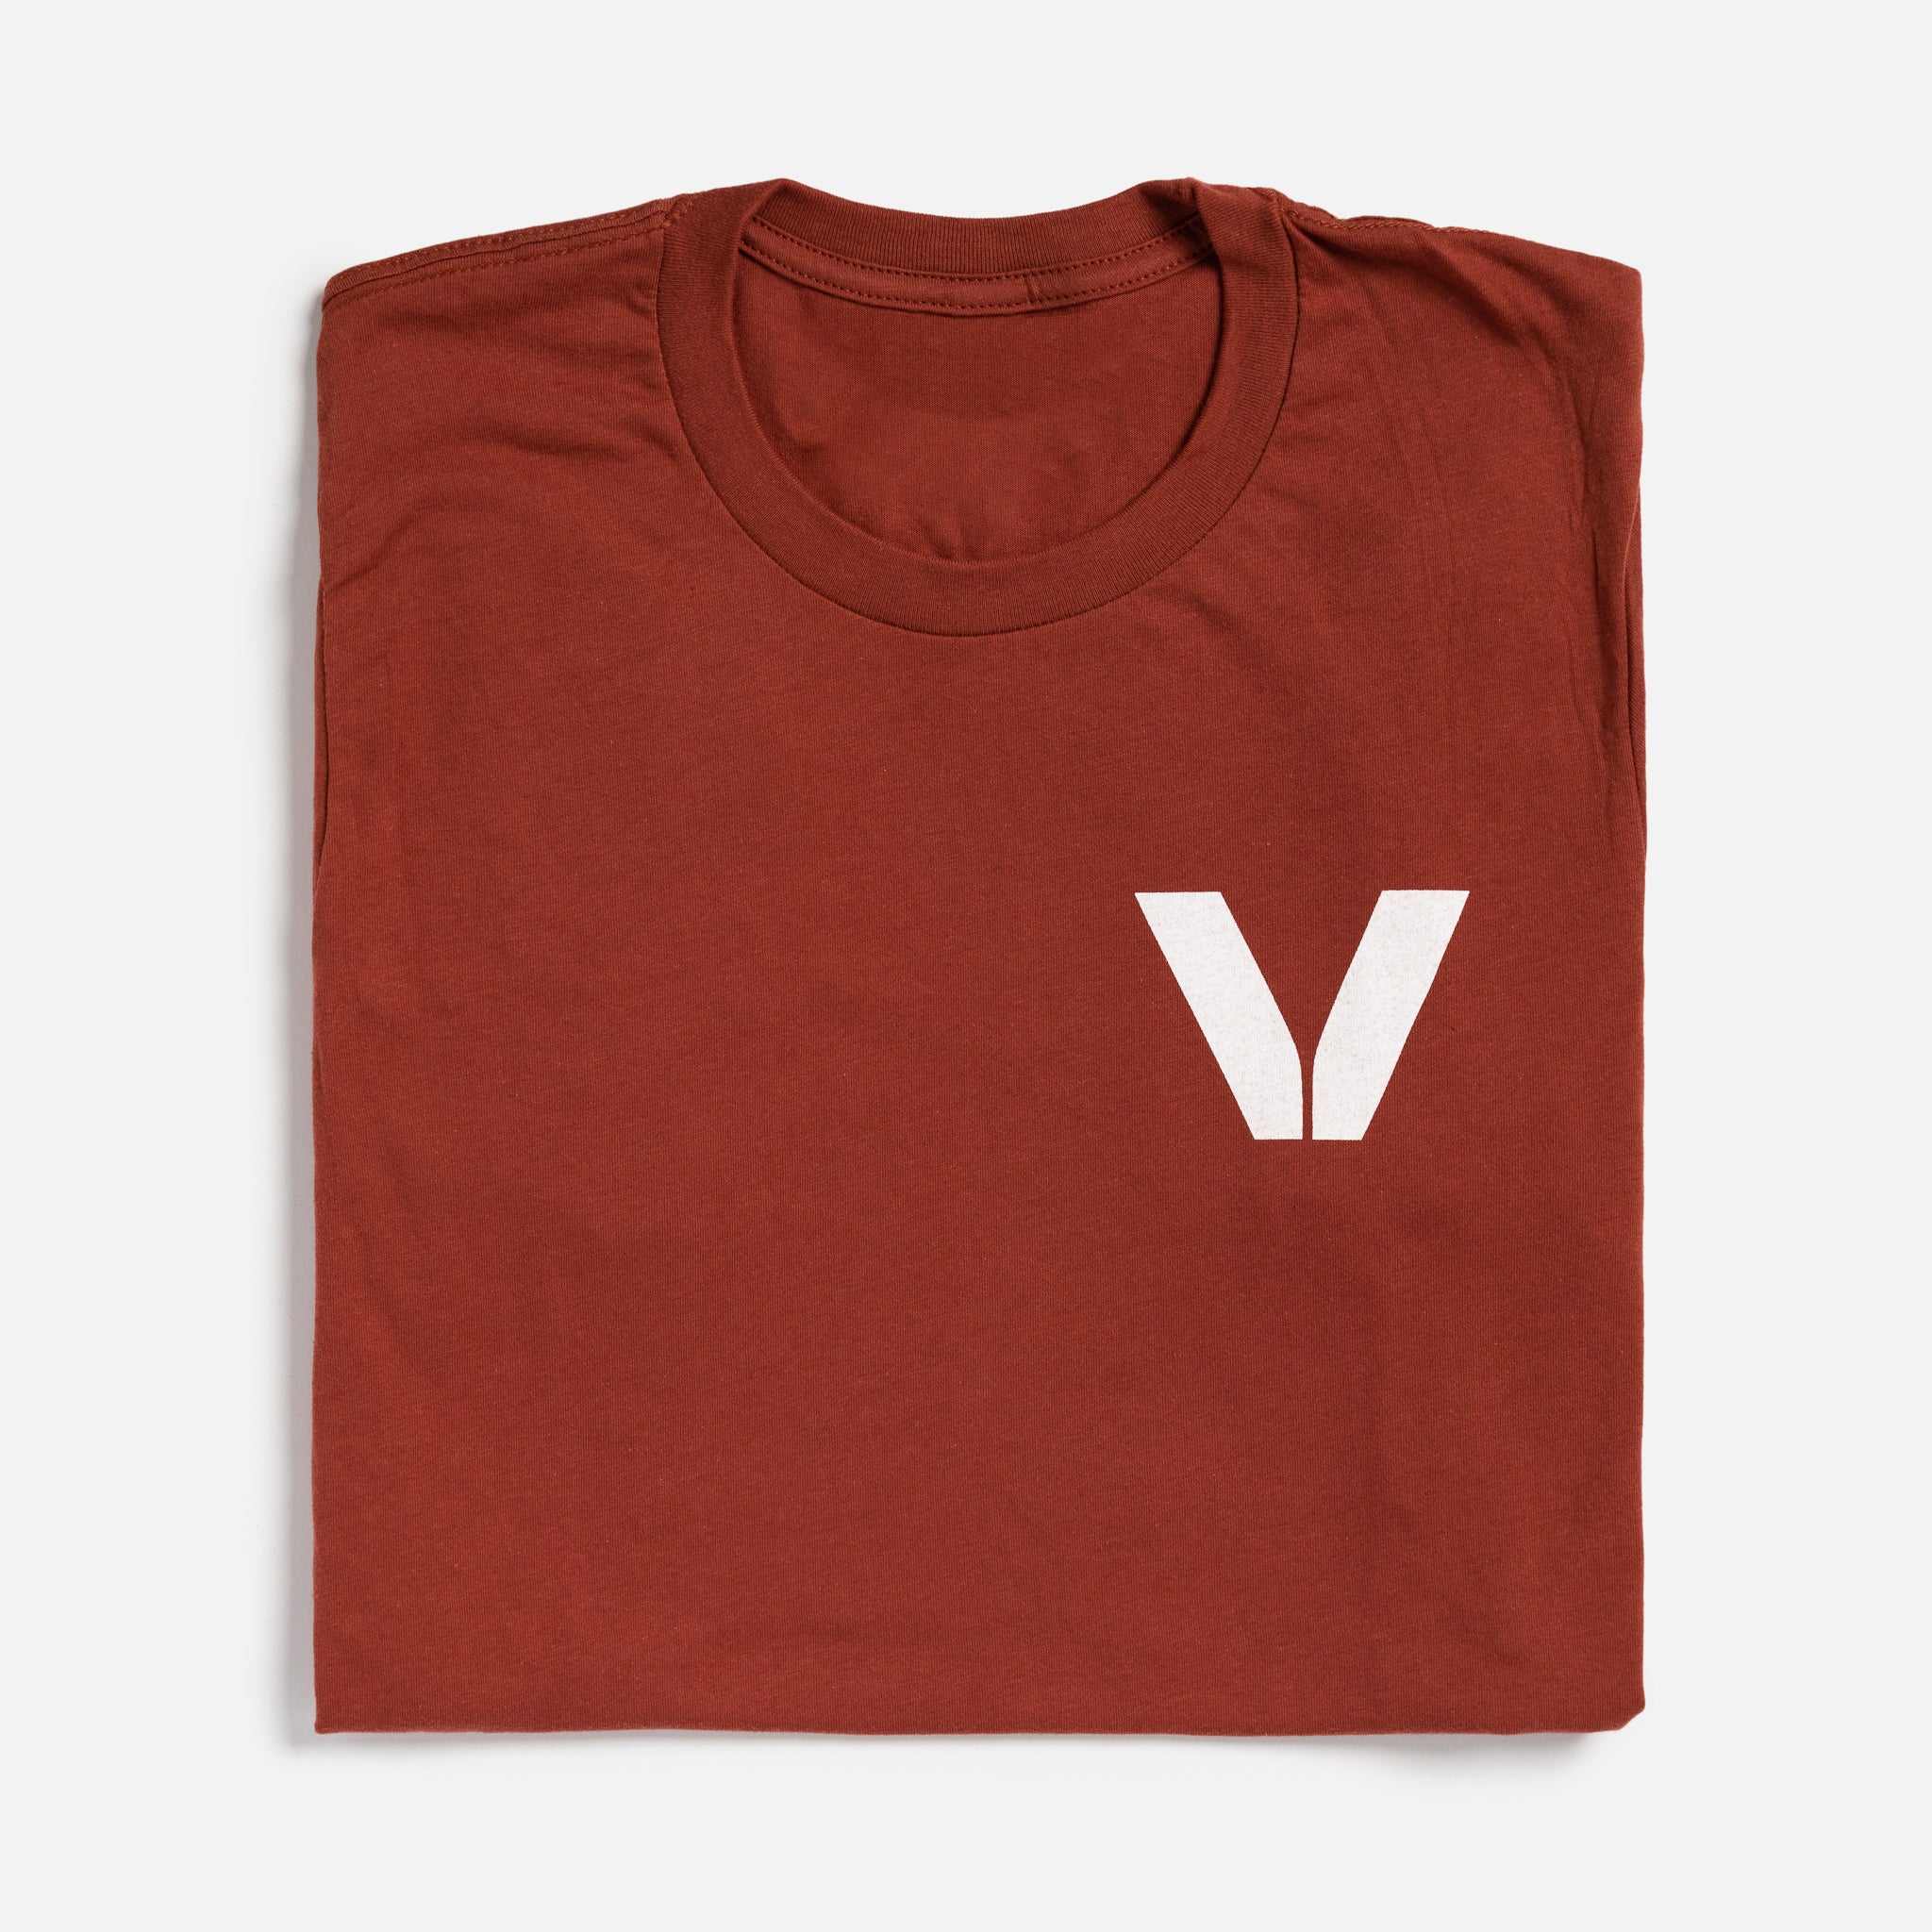 Vesterheim T-Shirt